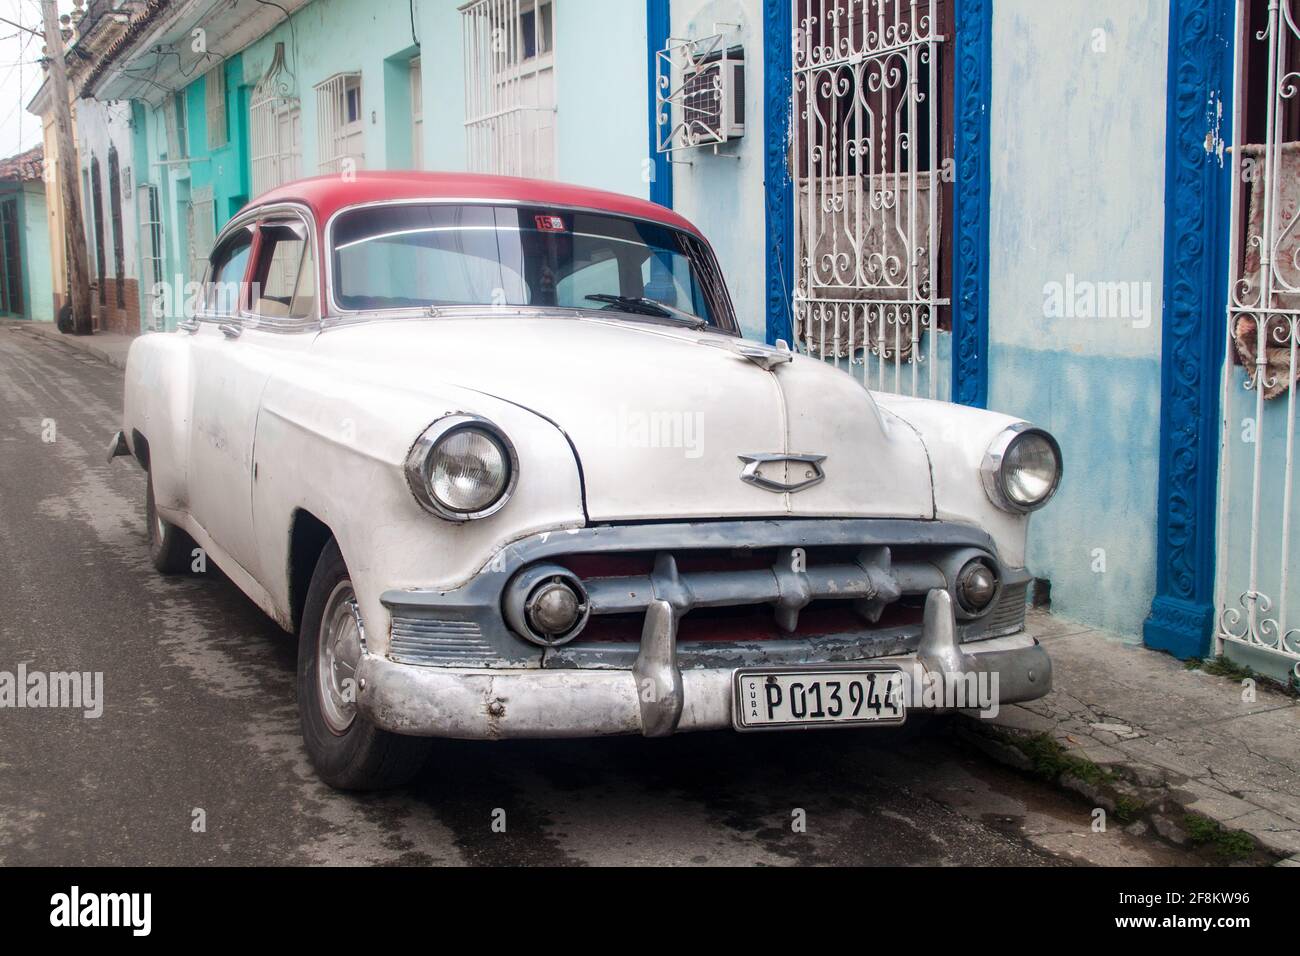 SANCTI SPIRITUS, CUBA - 7 FÉVRIER 2016 : voiture d'époque dans une rue de Sancti Spiritus. Banque D'Images